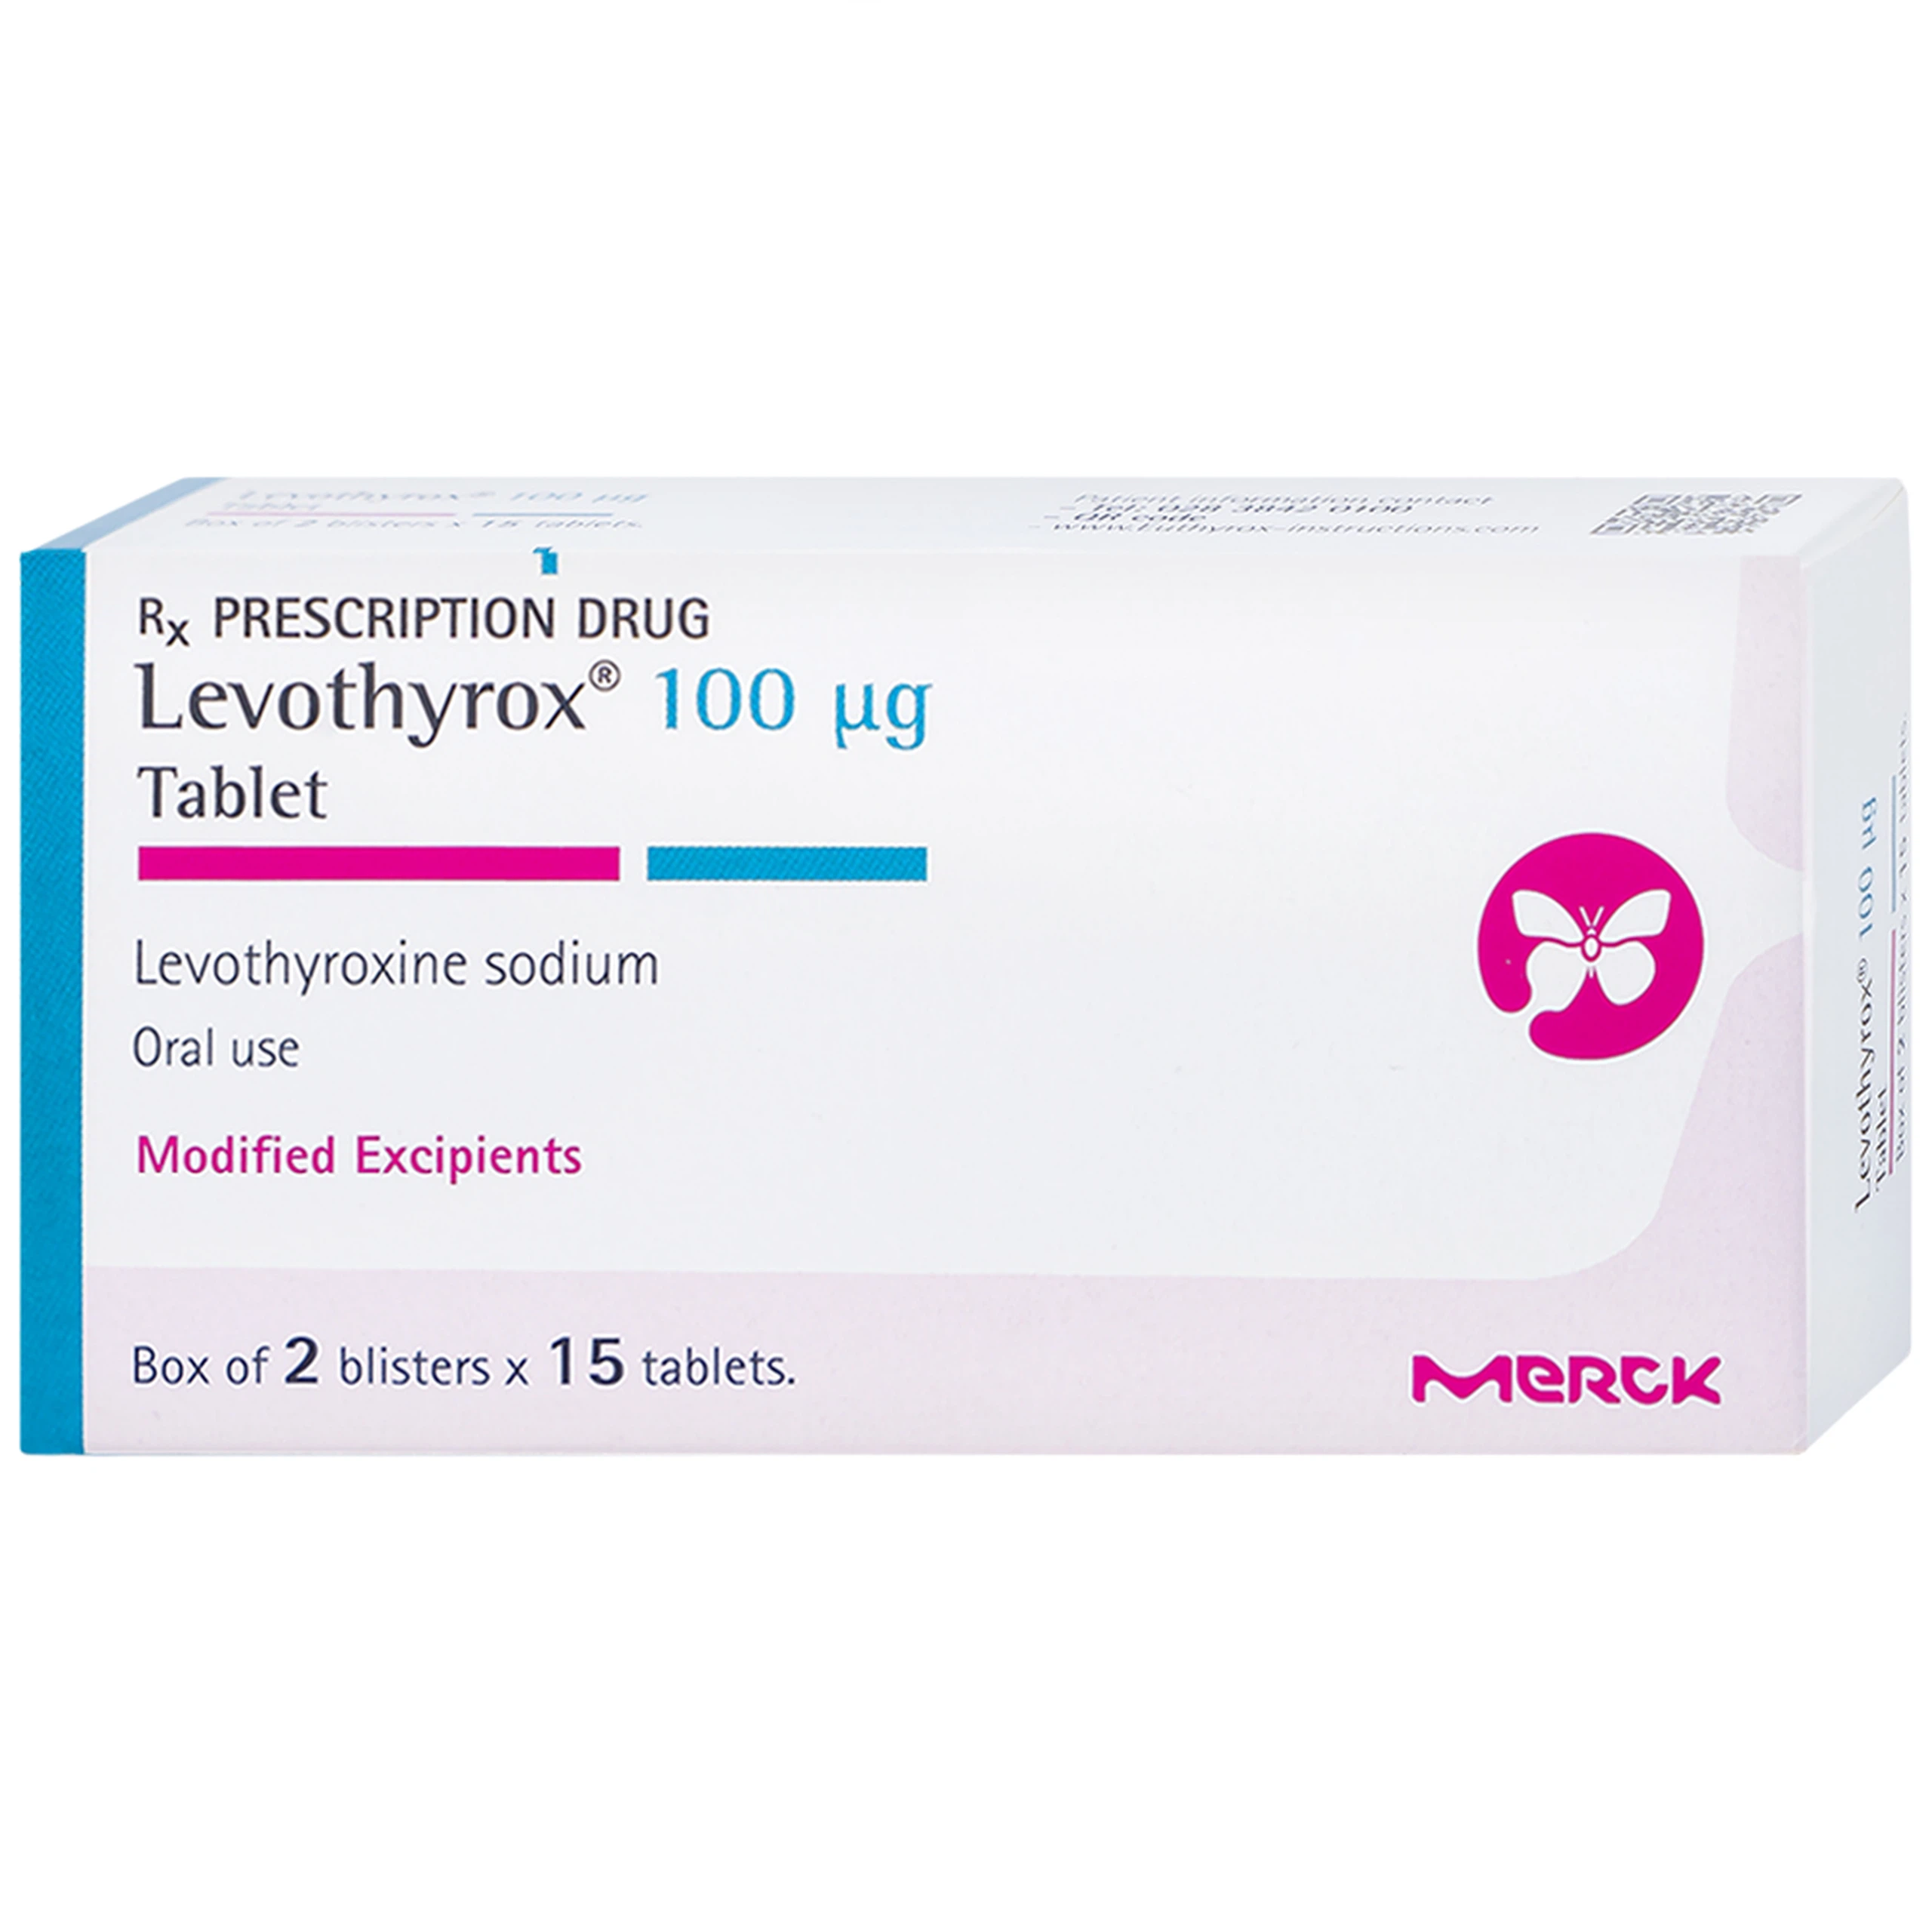 Thuốc Levothyrox 100µg Merck điều trị bướu giáp, suy giáp, ung thư giáp (2 vỉ x 15 viên)